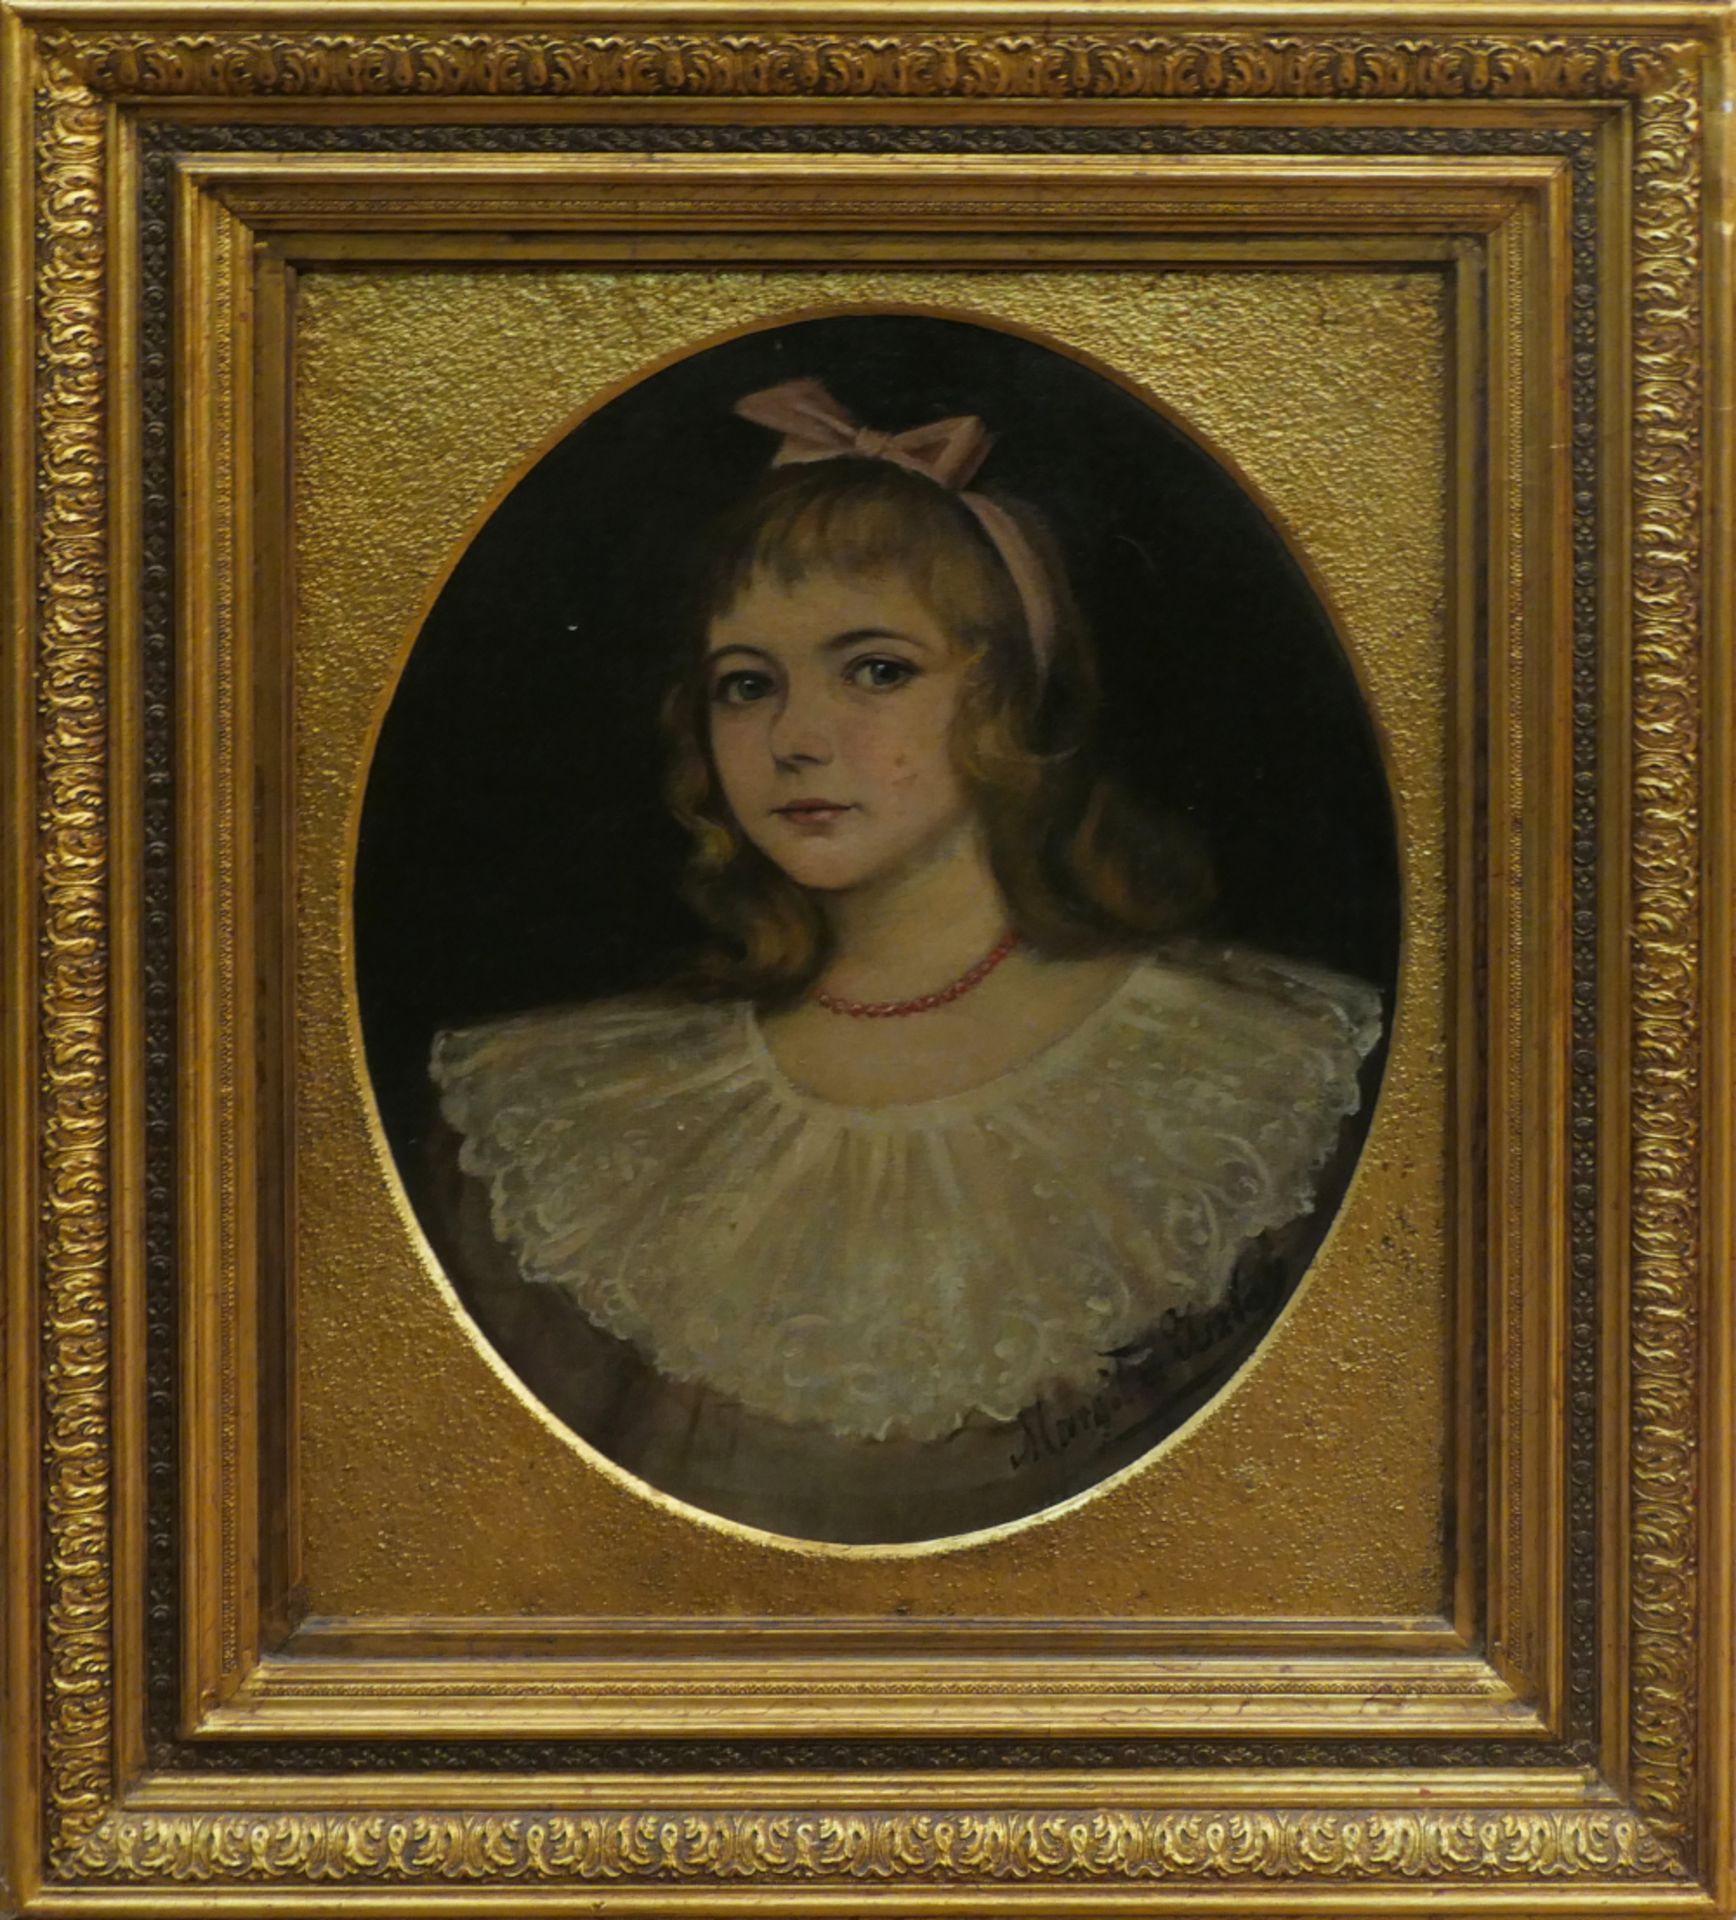 5 Ölgemälde (darunter 2 Damen-, 1 Mädchen-, 2 Herrenportraits) wohl z.T. 18./19. Jh./ um 1900,